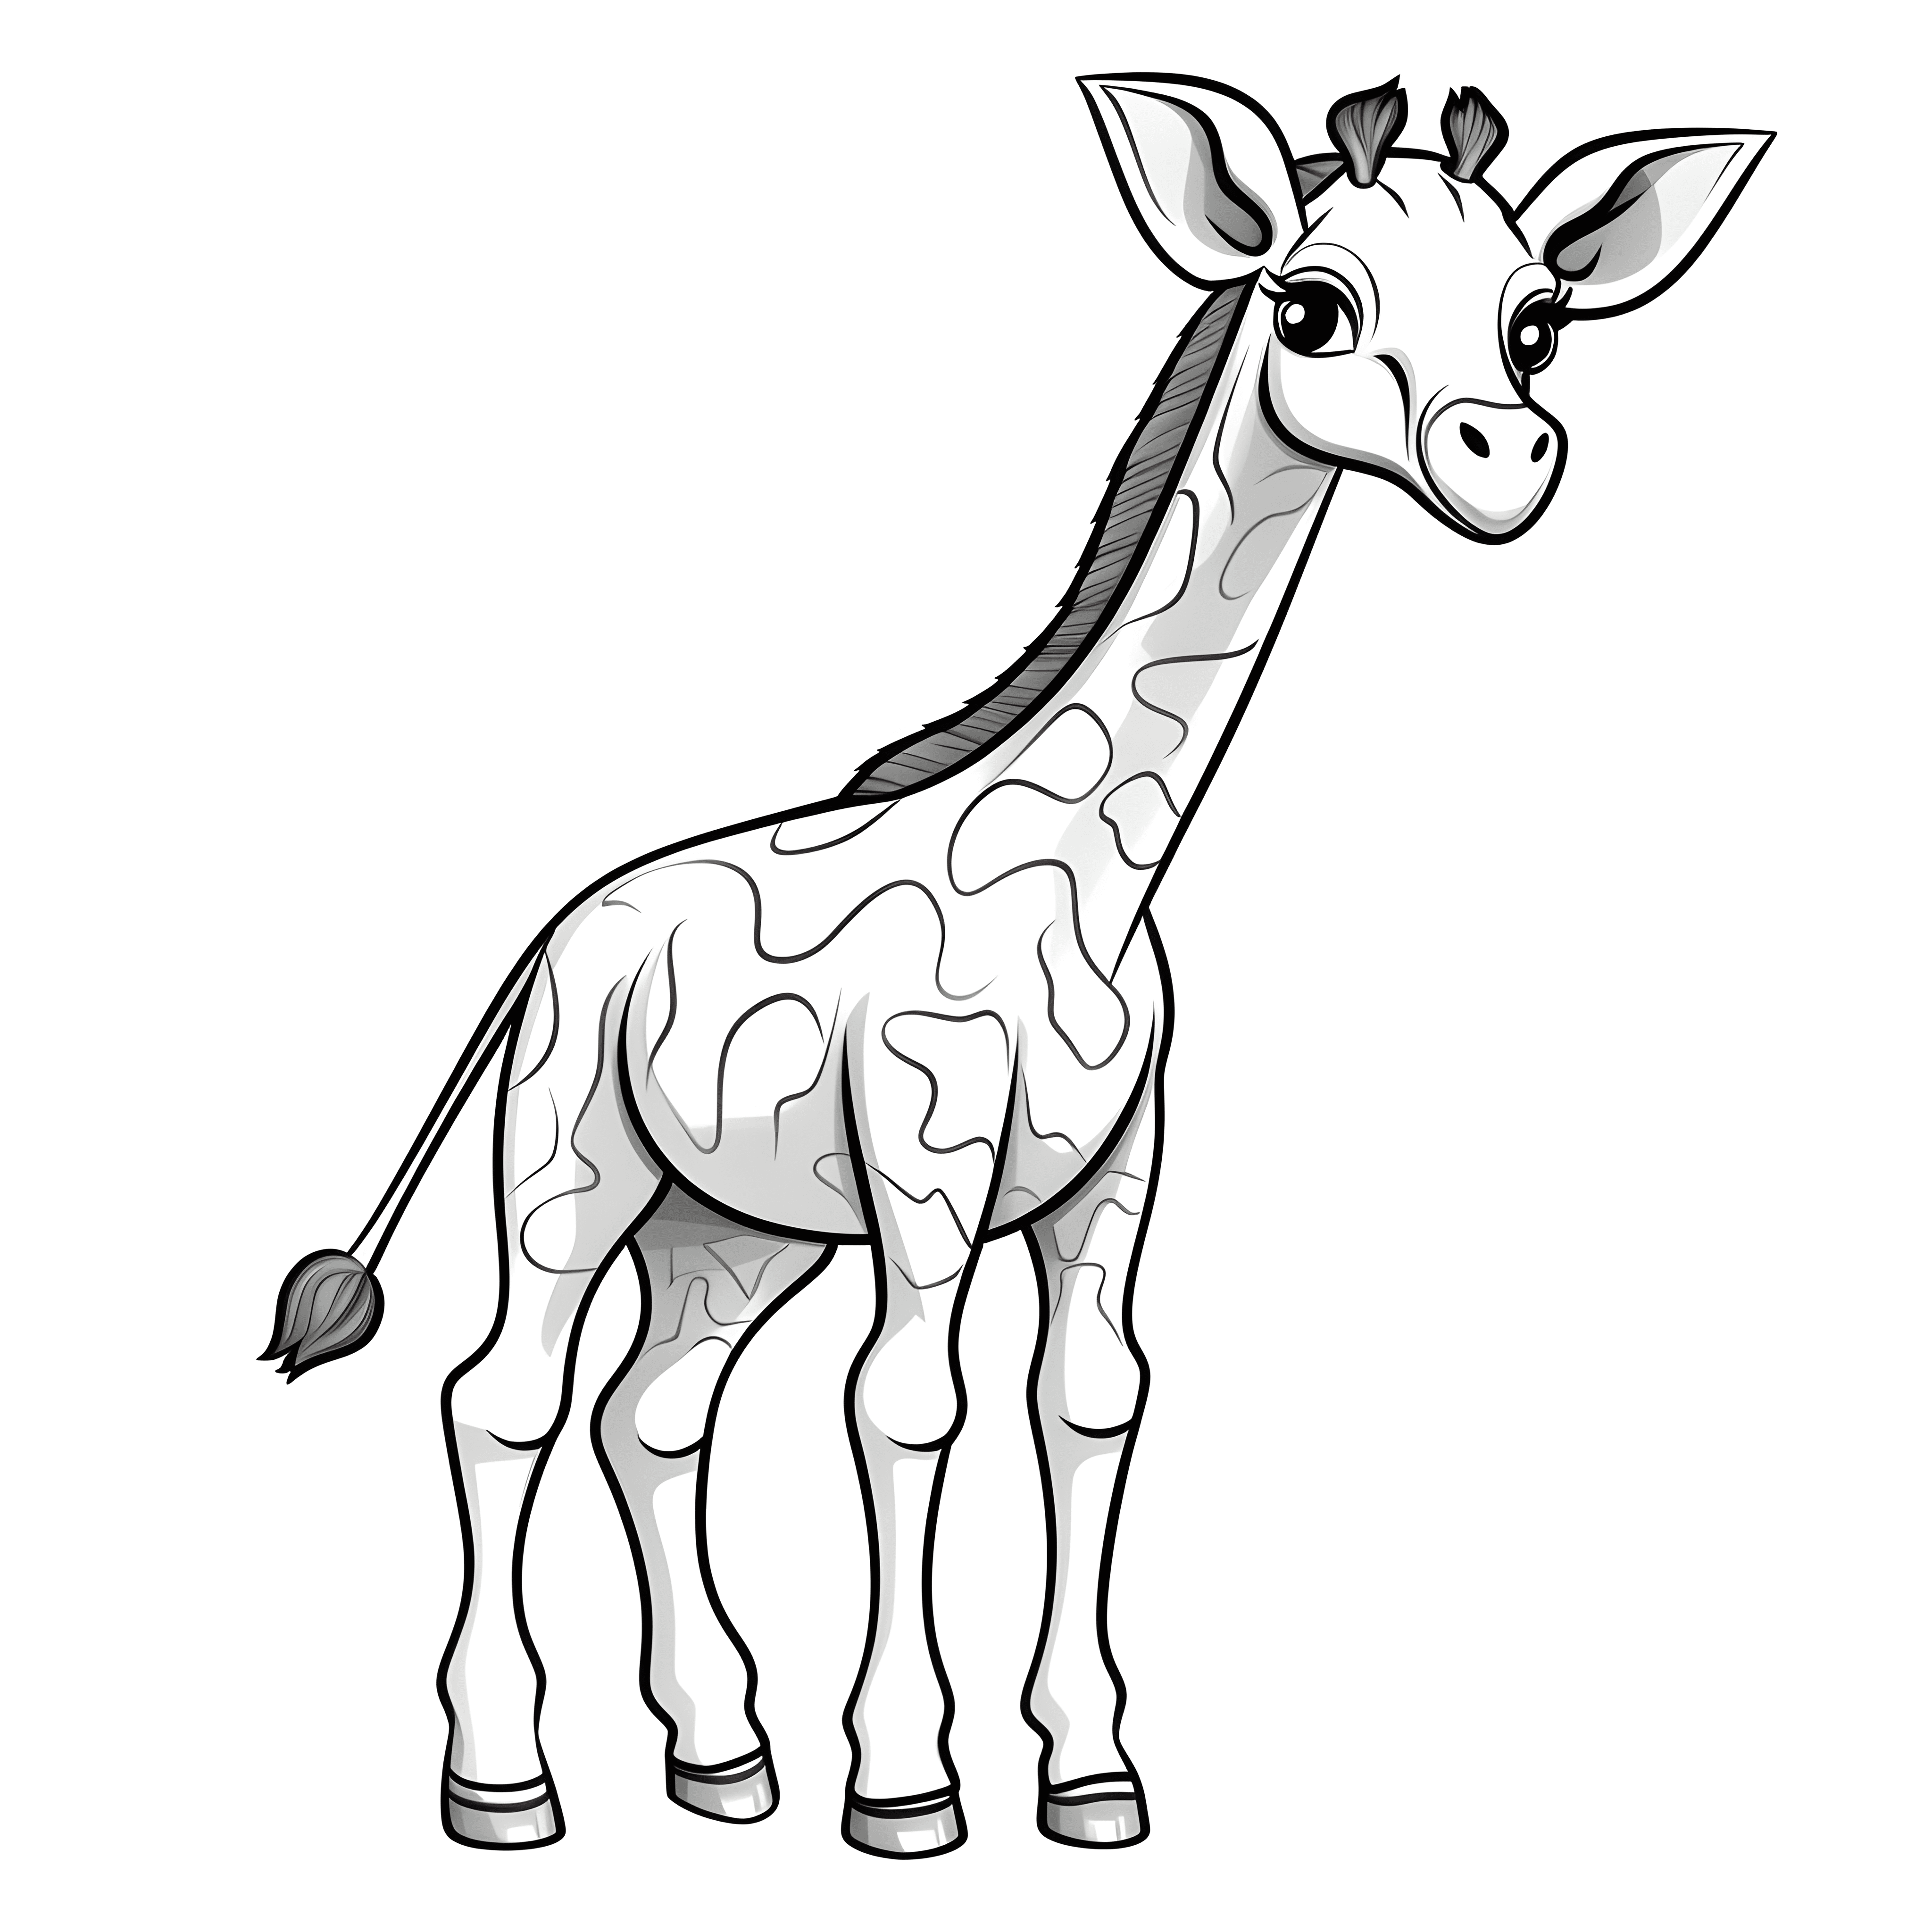 Eine sehr einfache Cartoon-Giraffe